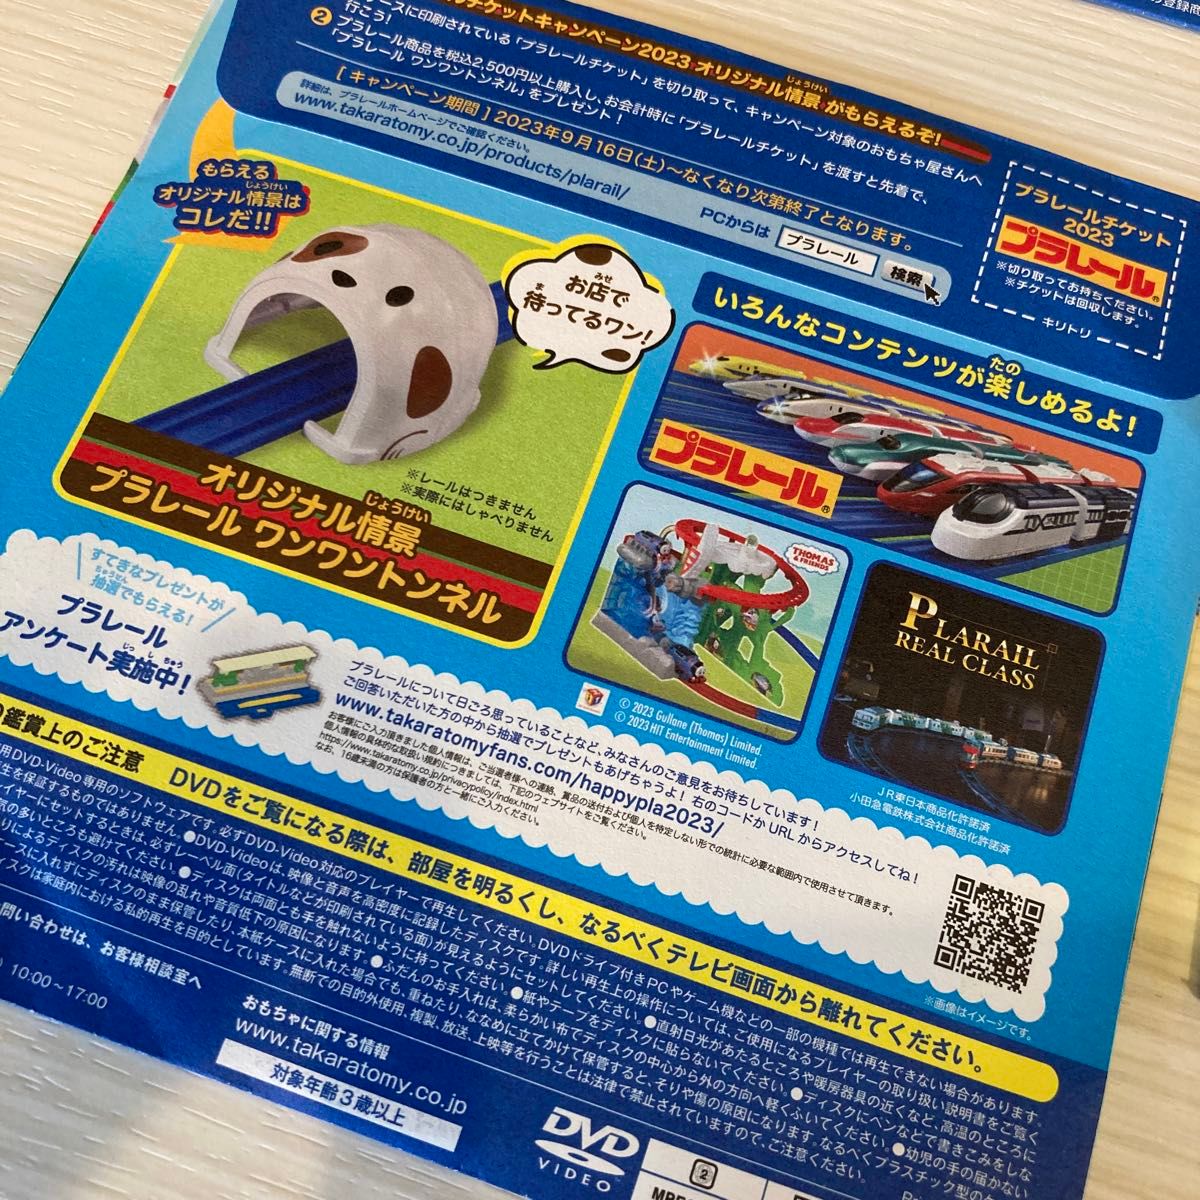 【DVD2枚おまけ】プラレール シール図鑑 鉄道 プラレール DVD タカラトミー 